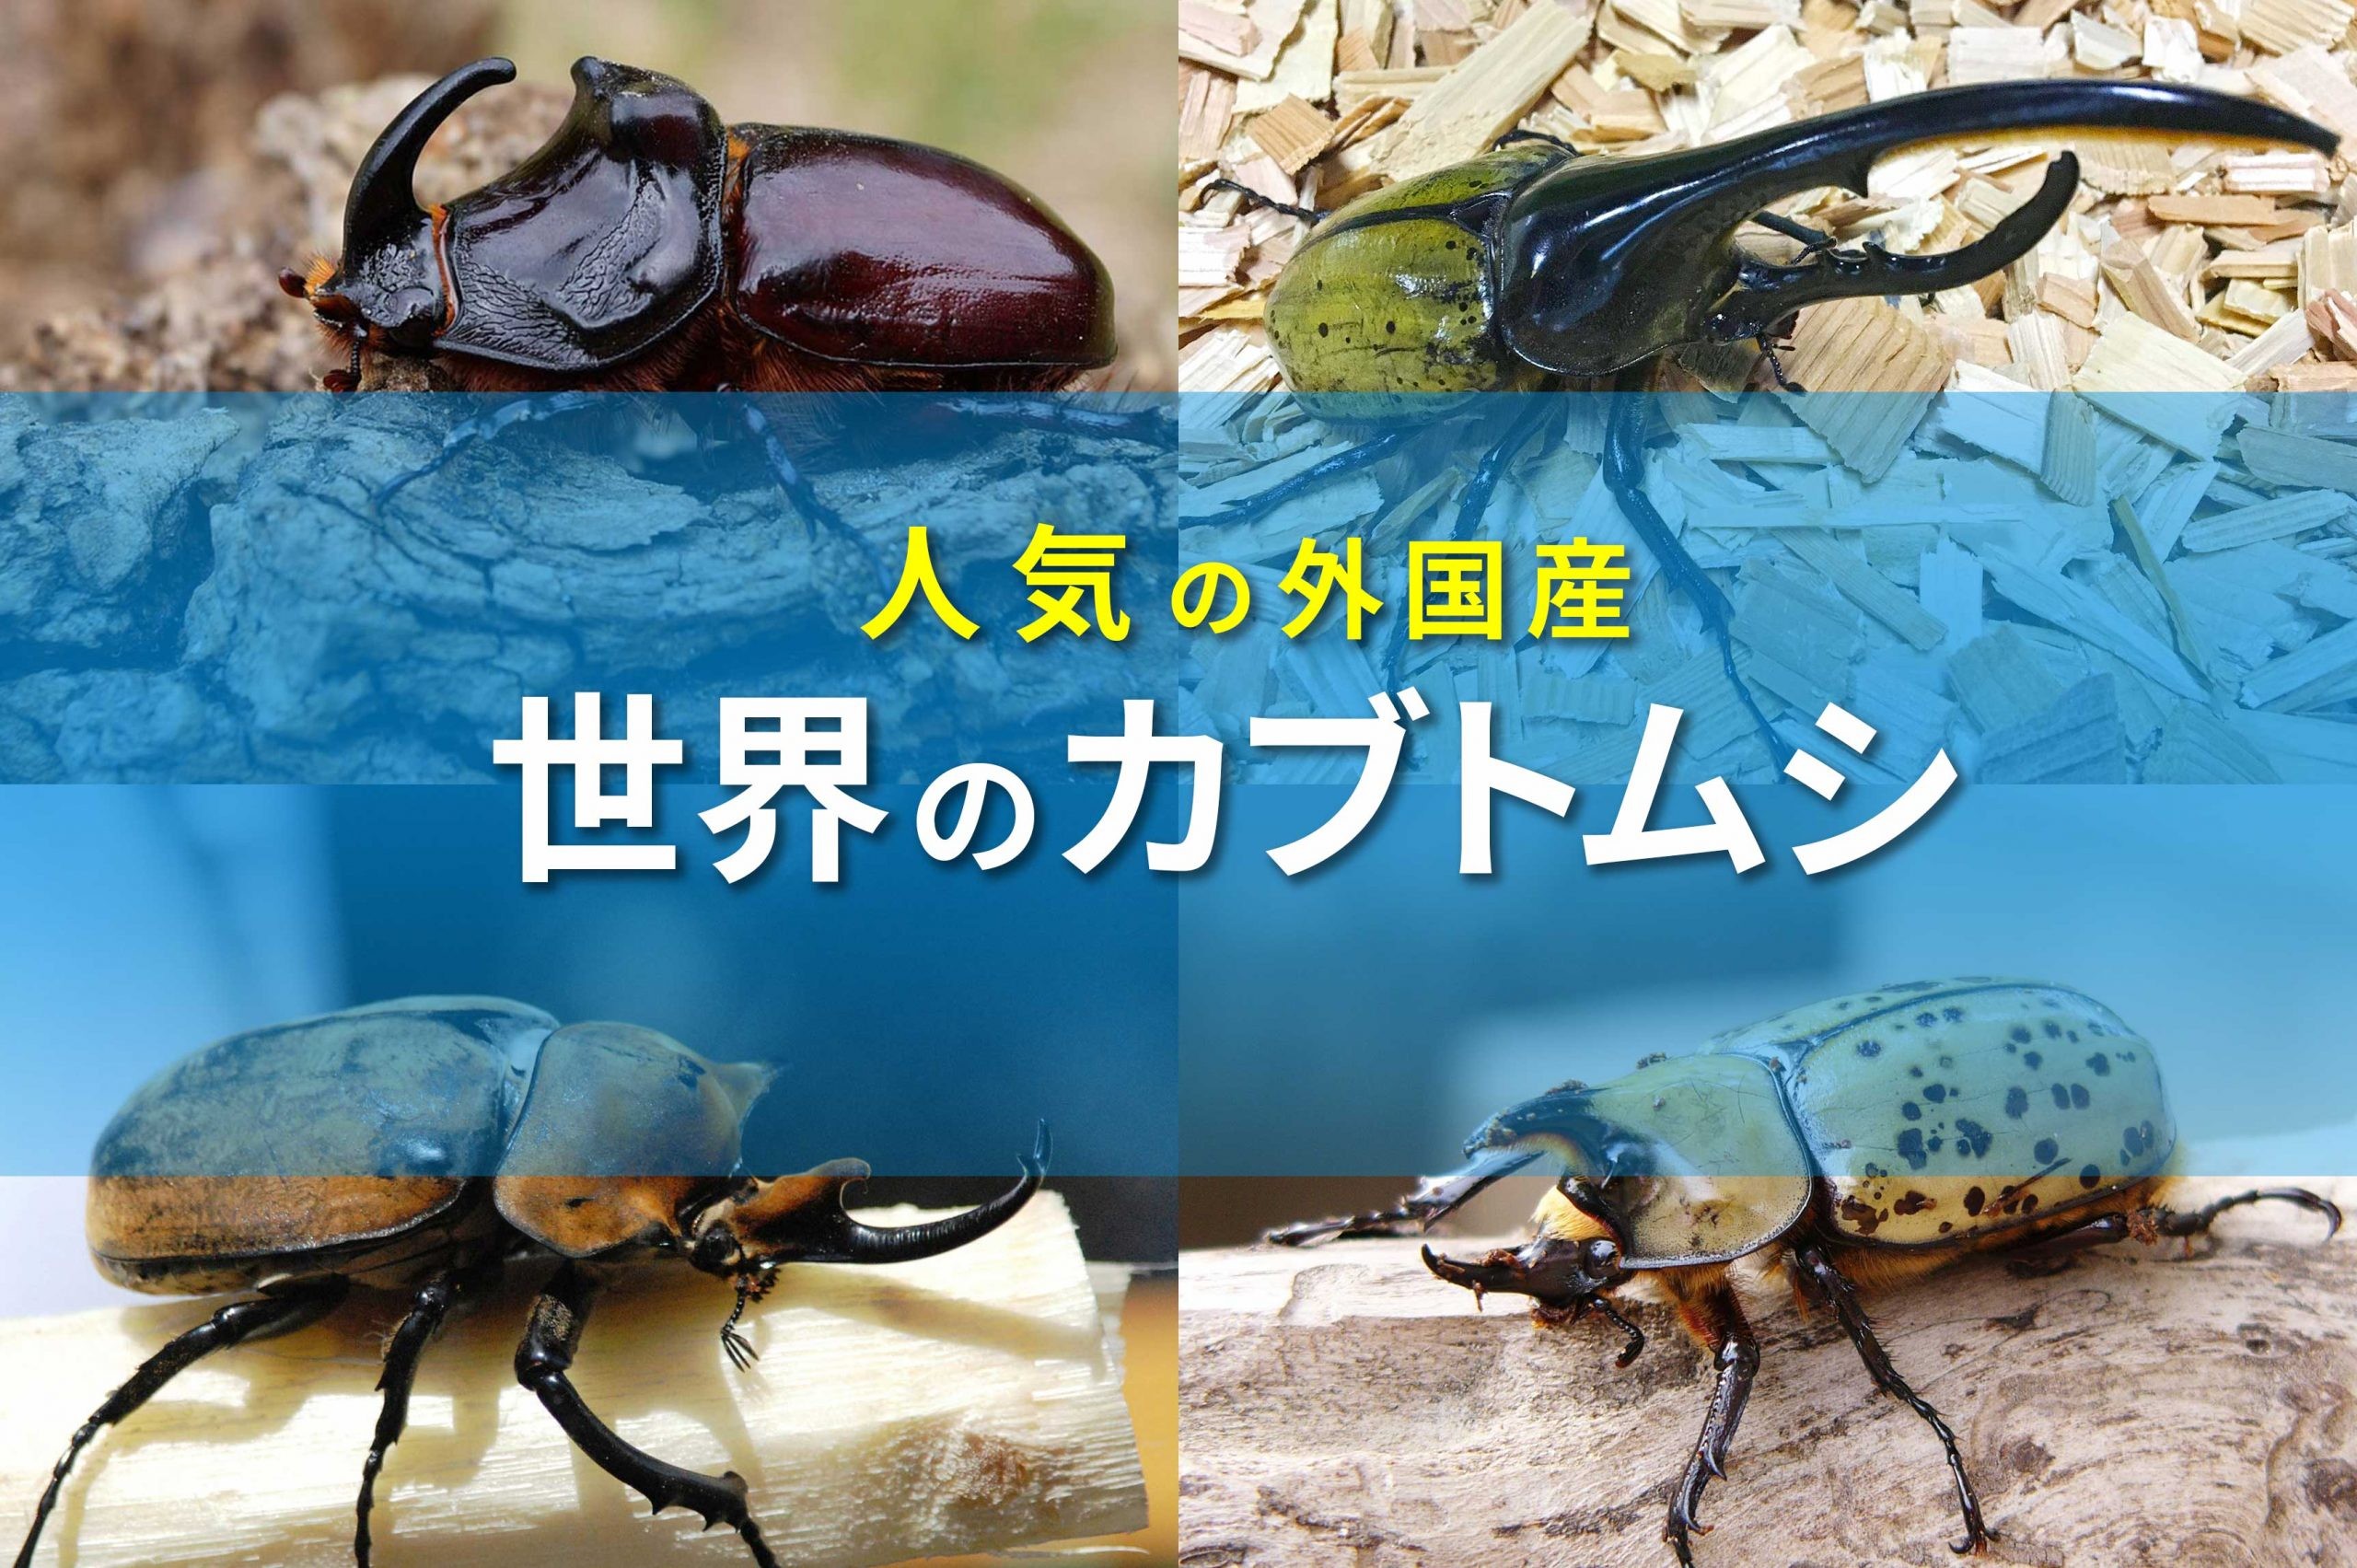 世界のカブトムシ大集合 外国産は日本と違った面白さがある 昆虫写真図鑑 ムシミル